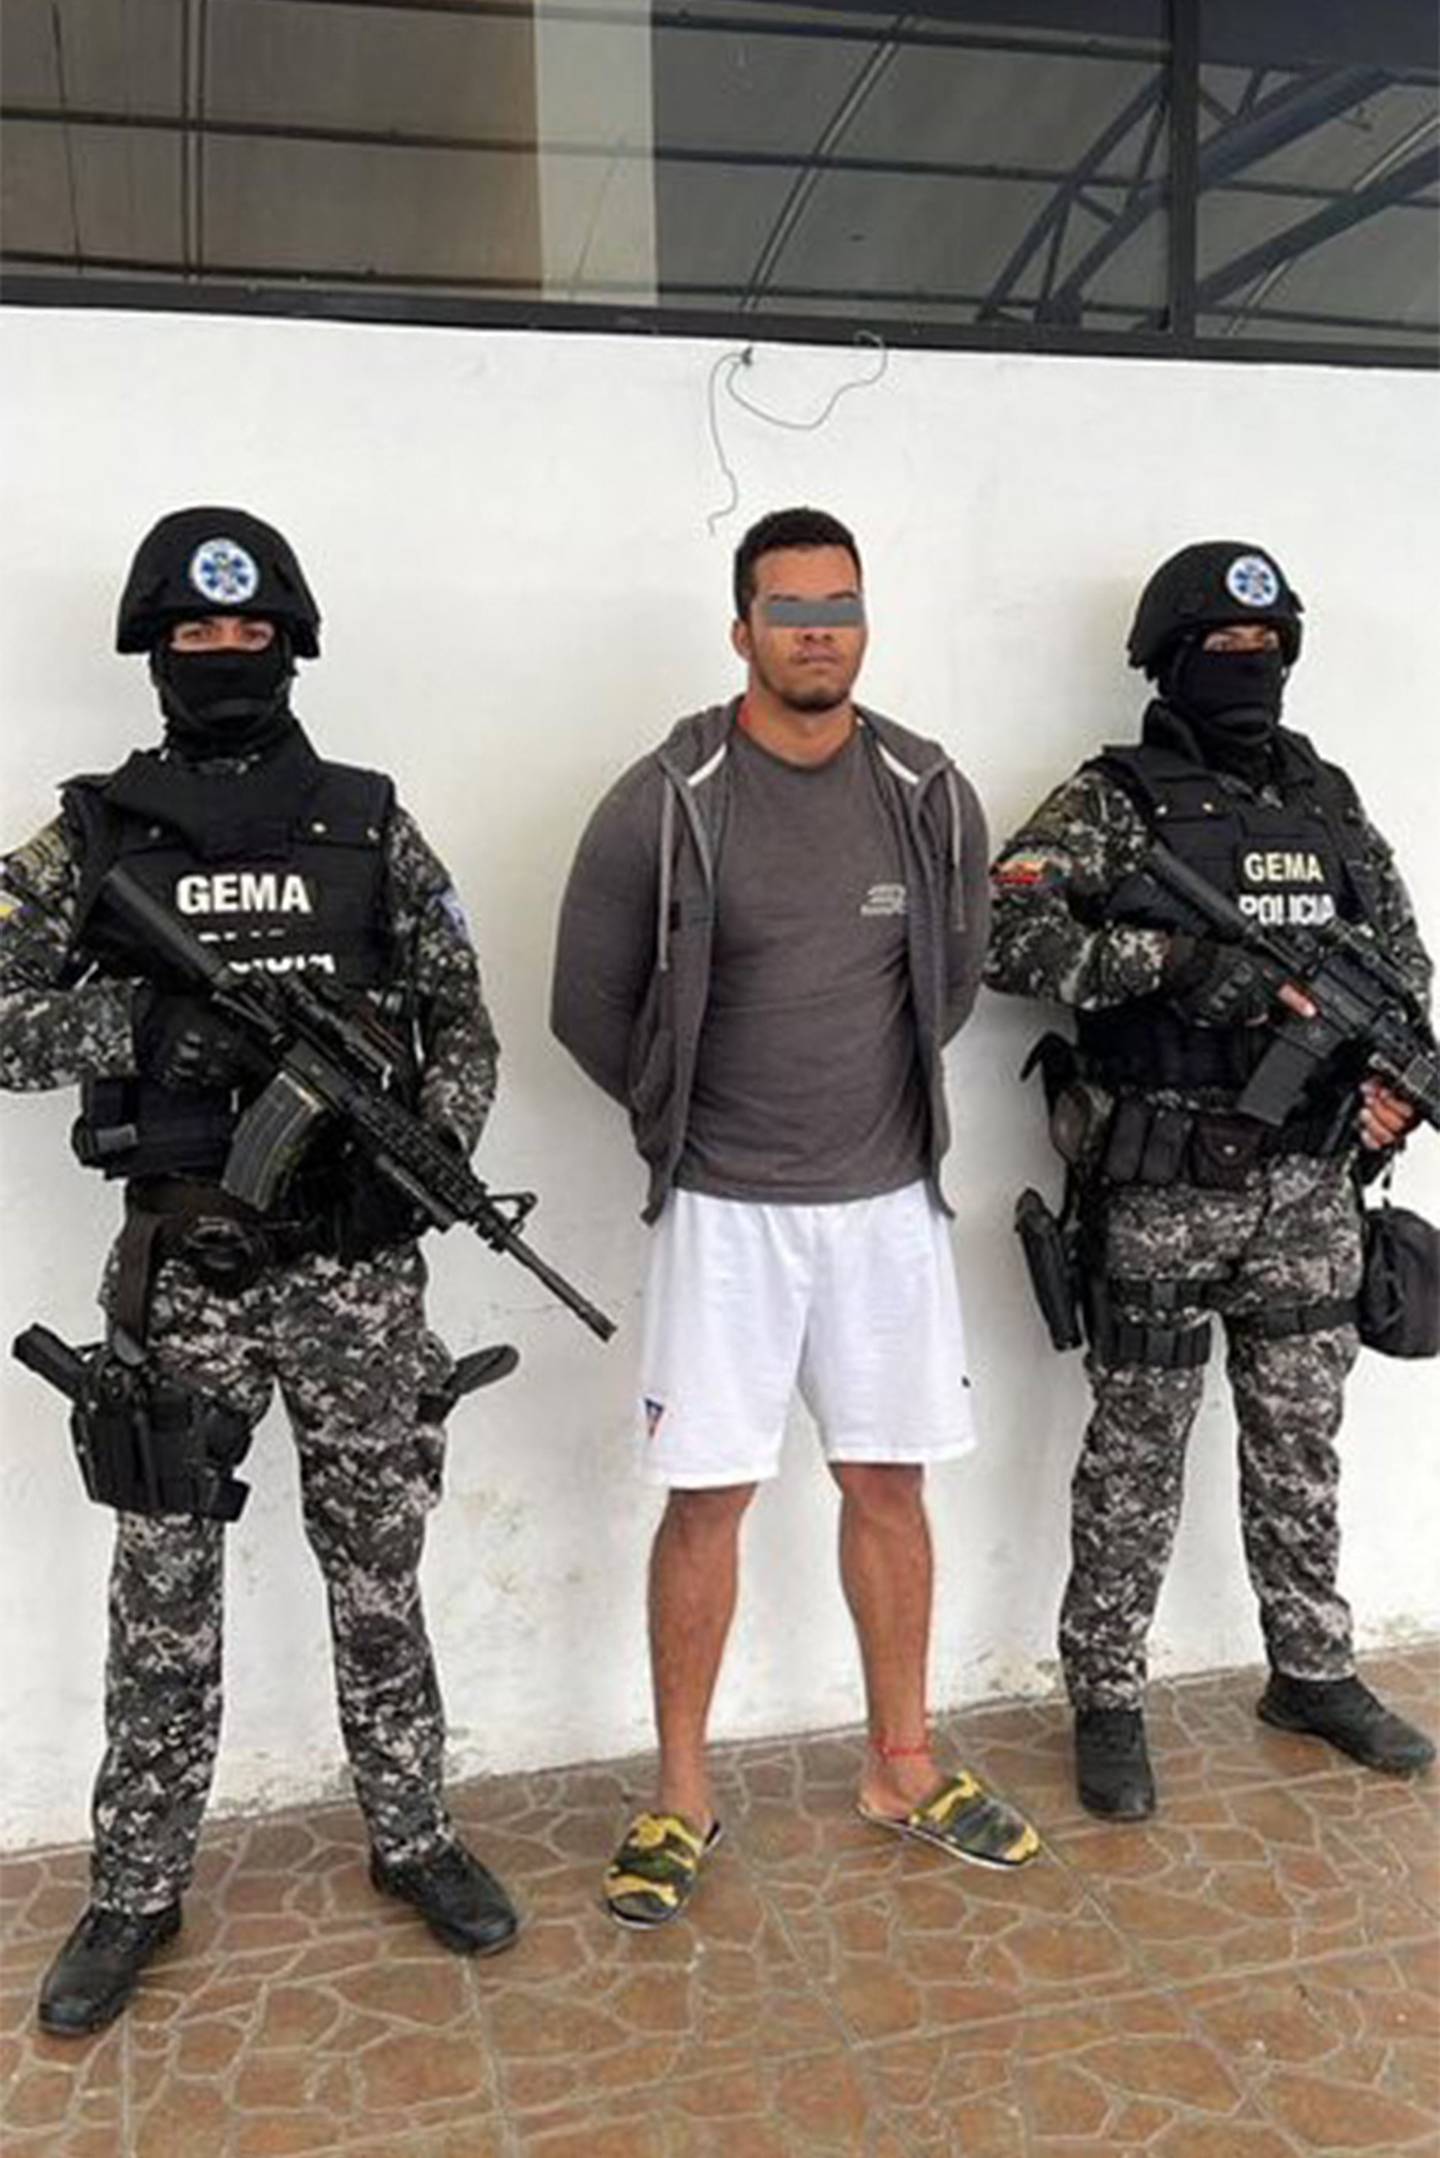 El líder de la disidencia colombiana de las FARC, Carlos Arturo Landázuri Cortés, alias 'El Gringo', fue capturado en Ecuador después de tres meses de intensas actividades investigativas y de inteligencia en la región norte andina.